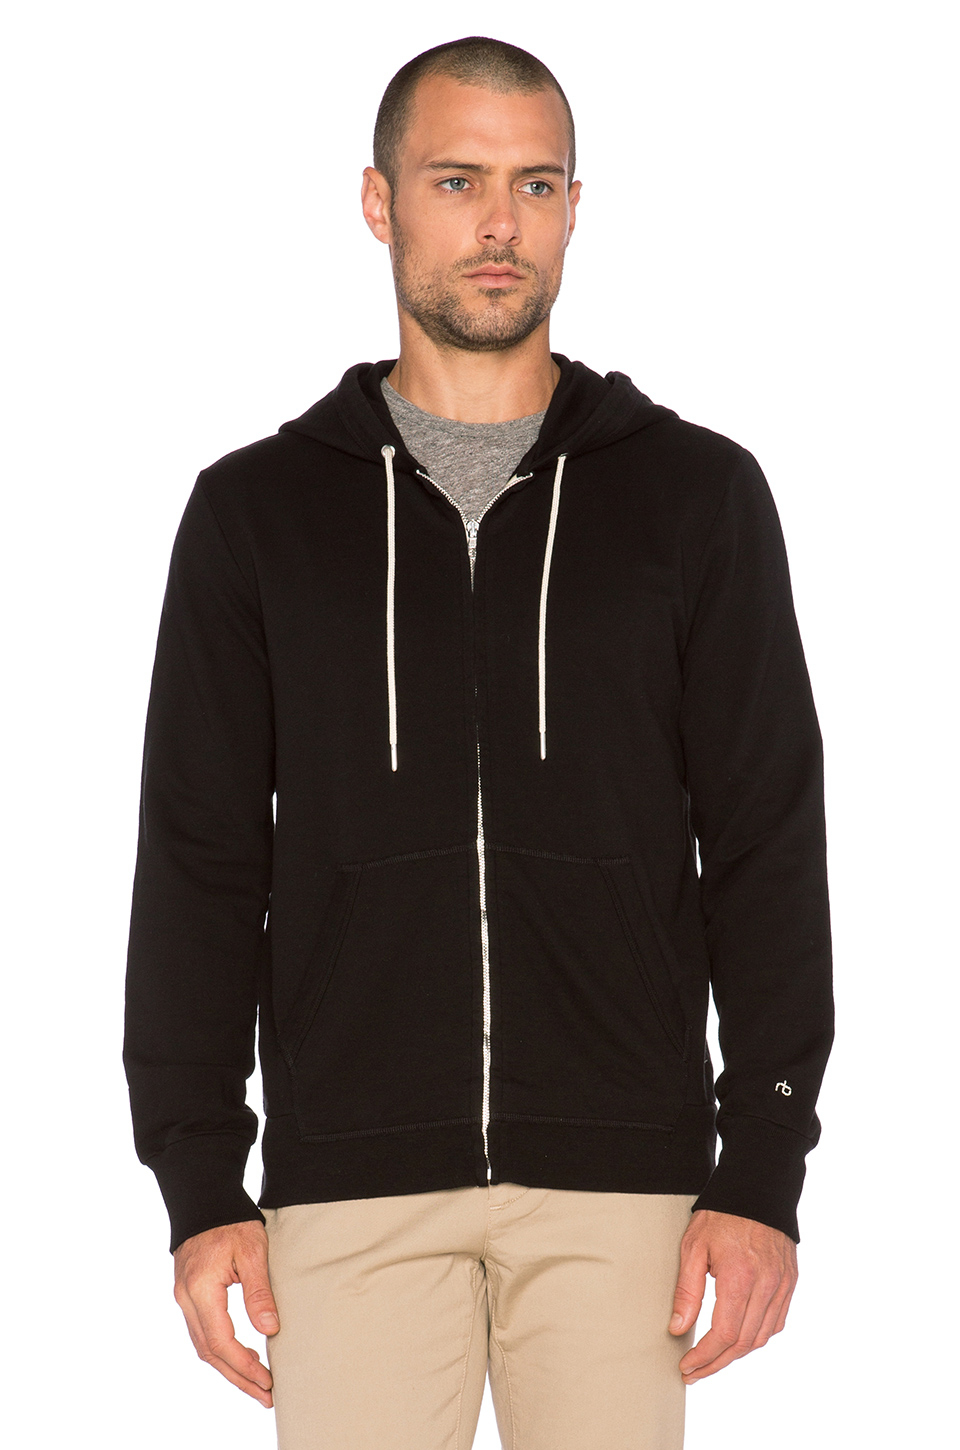 Lyst - Rag & Bone Standard Issue Zip Hoodie in Black for Men